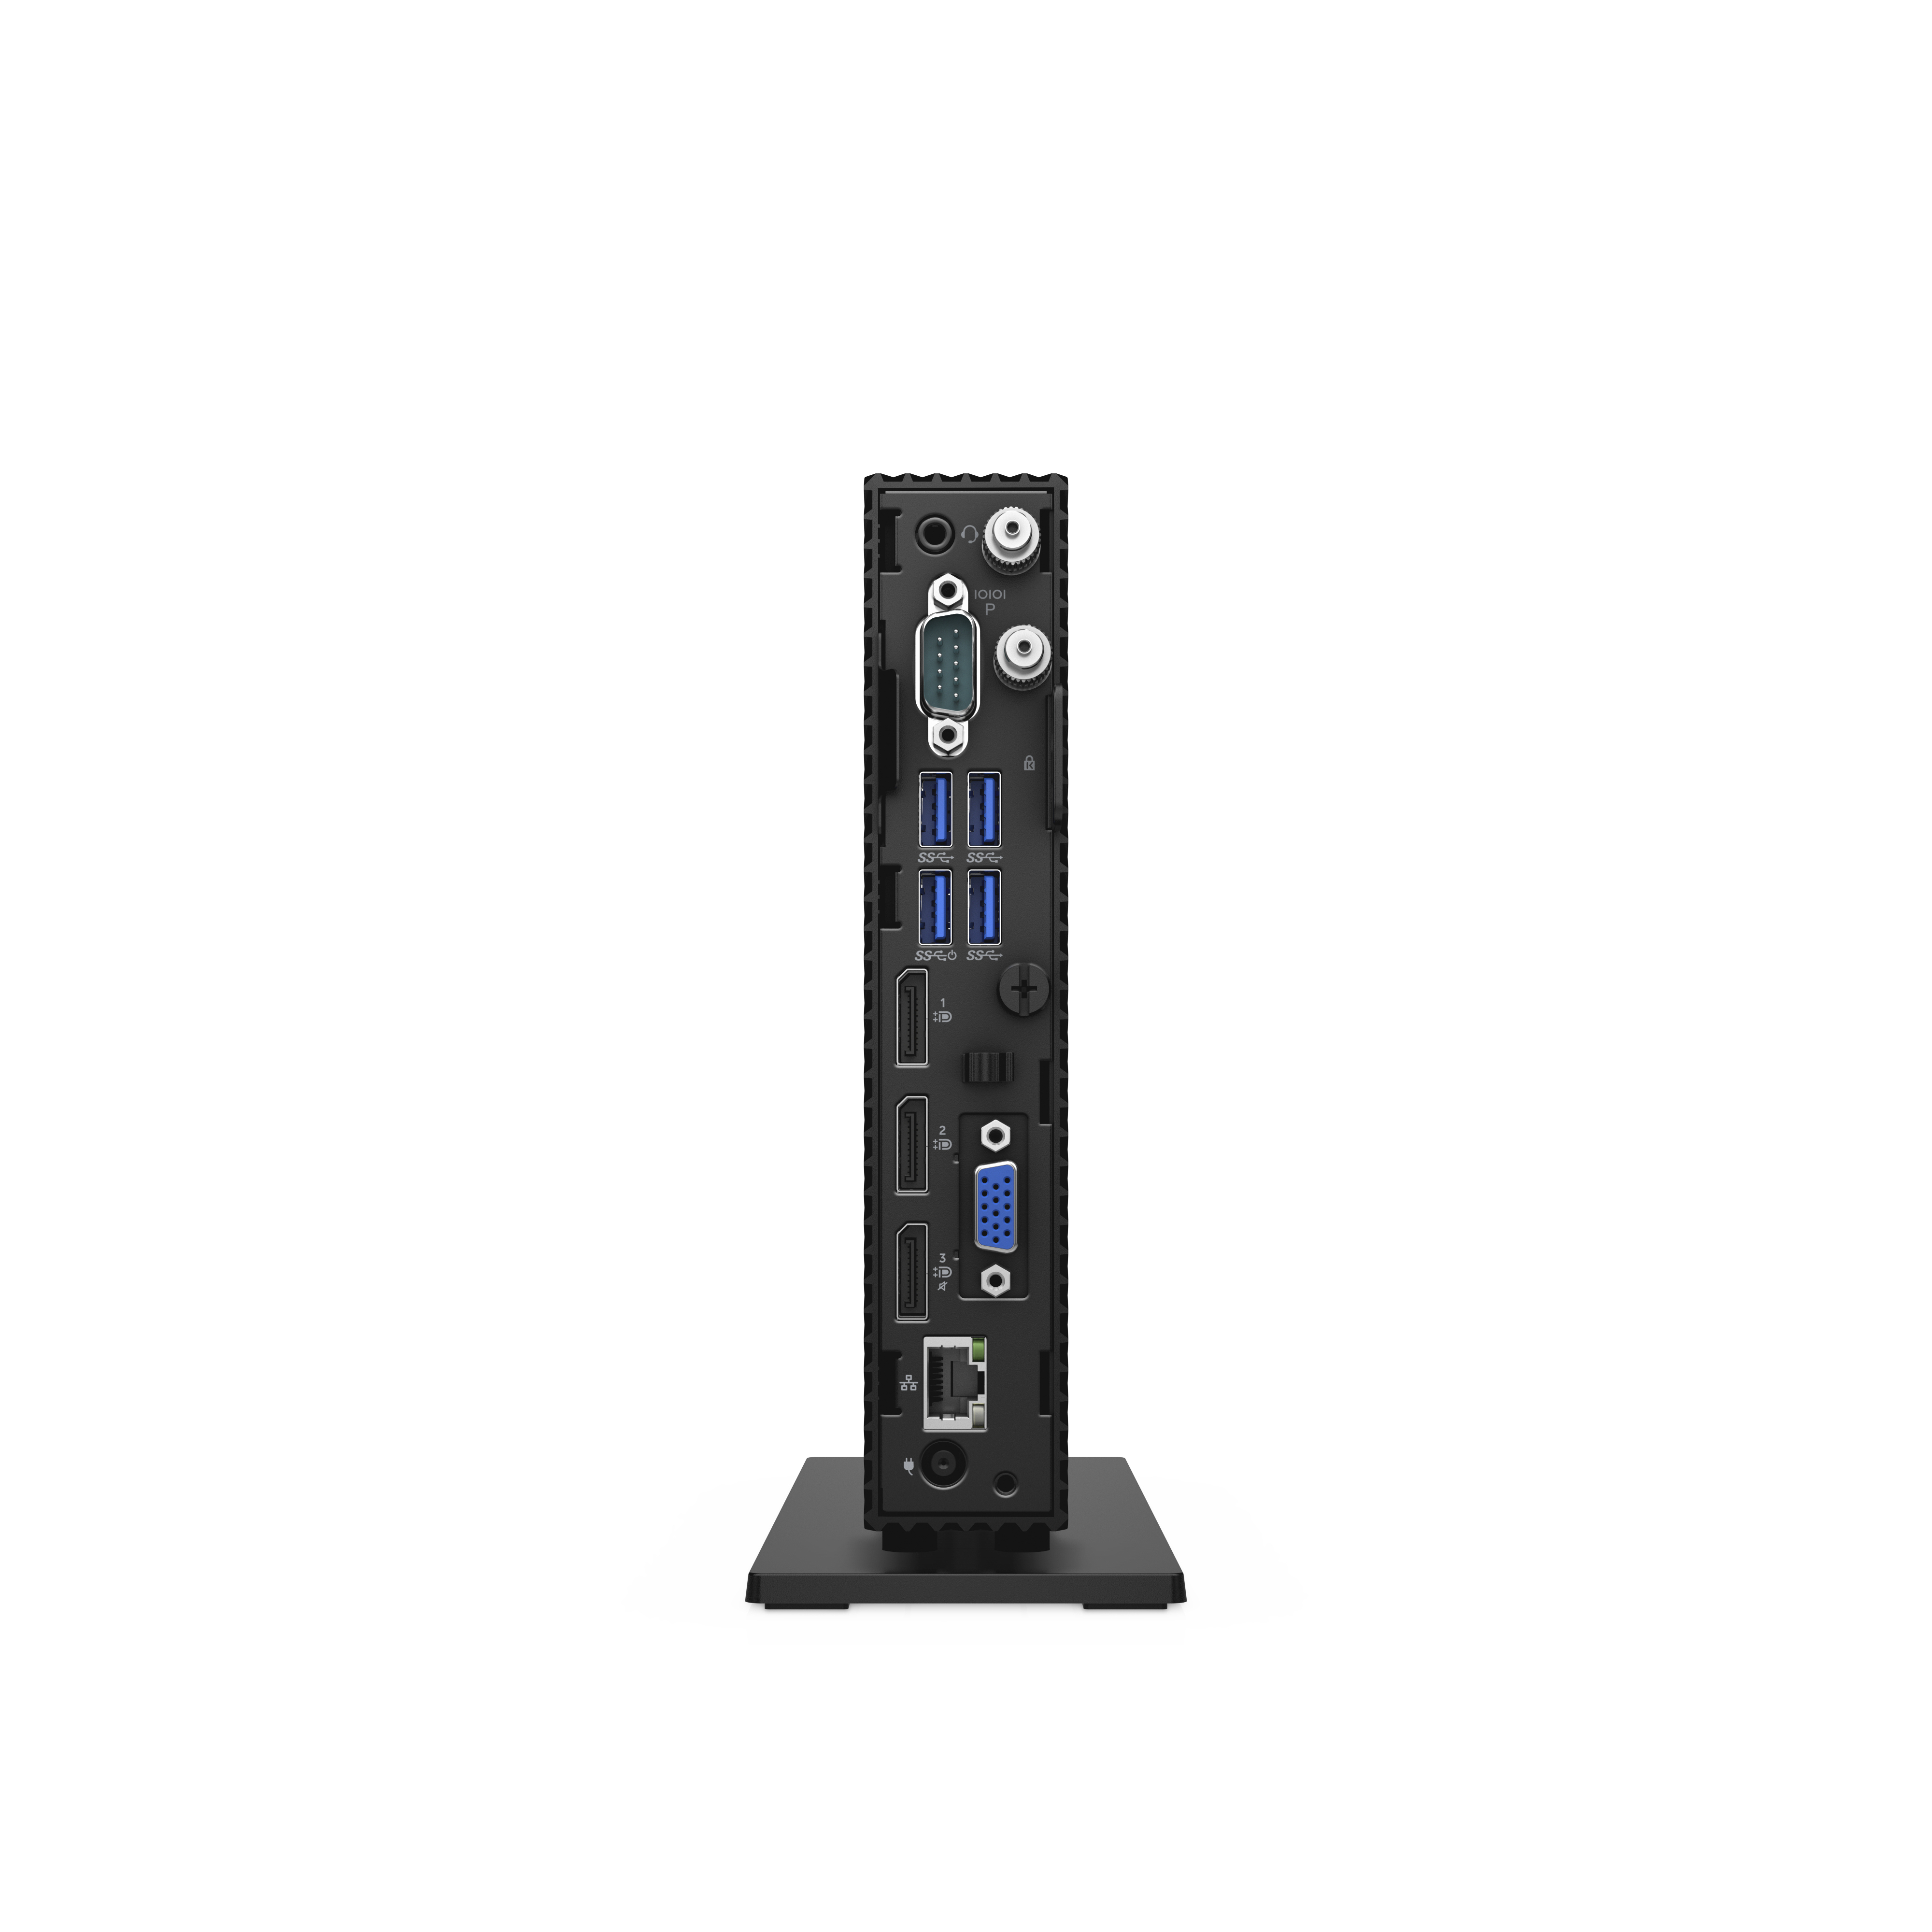 Dell Wyse 5070 1,5 GHz ThinOS 1,13 kg Nero J4105 [KJ799]